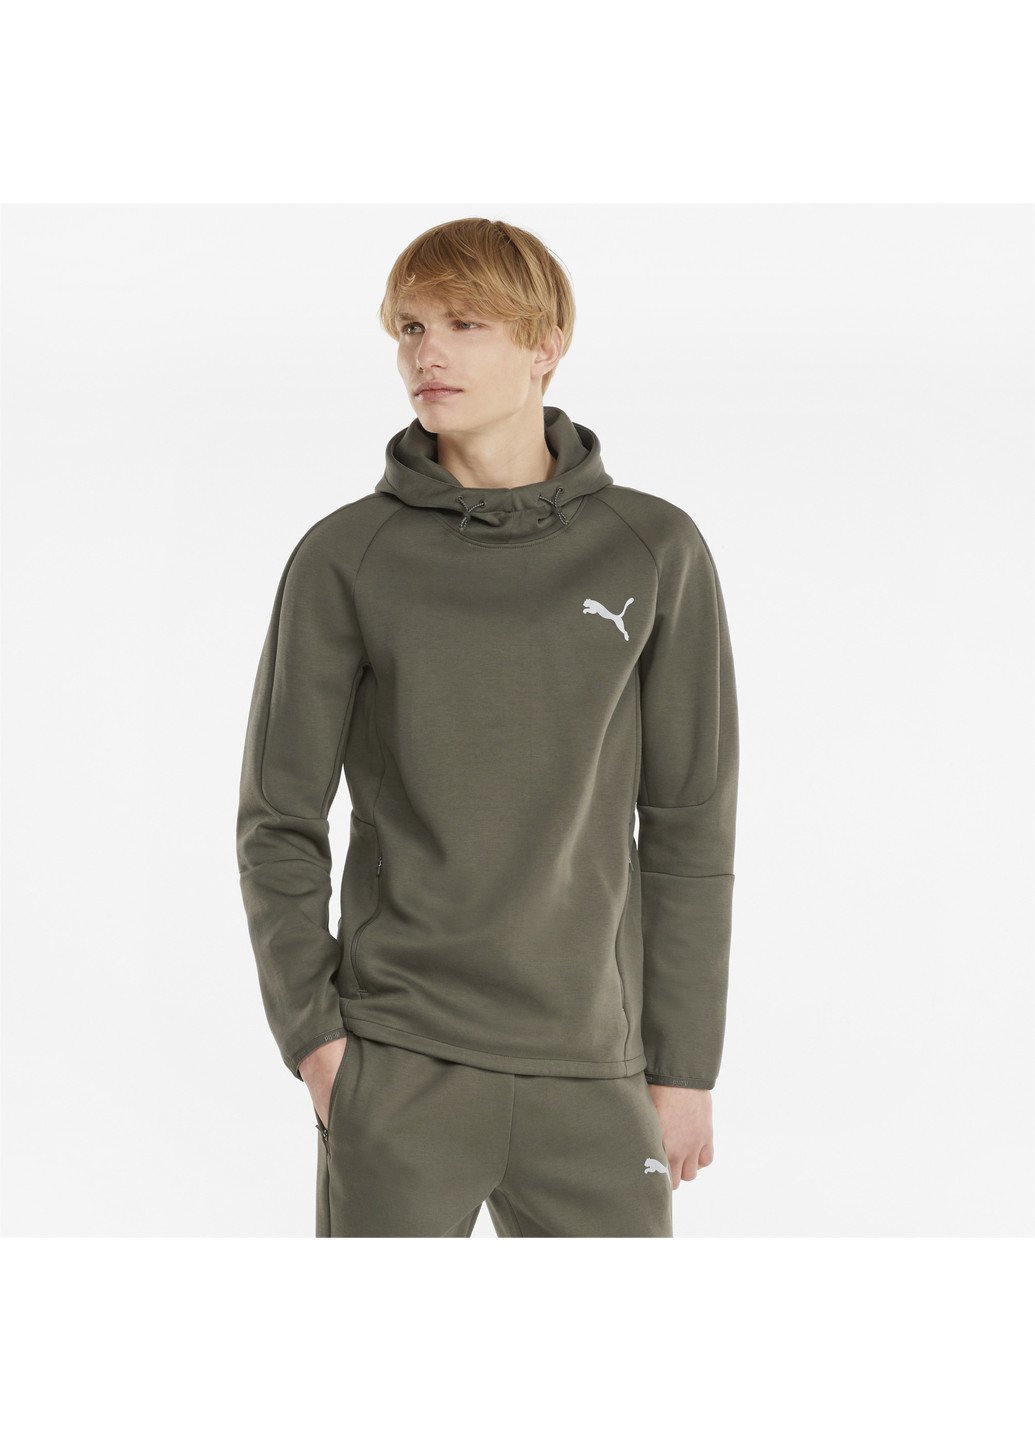 Зеленая демисезонная толстовка evostripe men's hoodie Puma